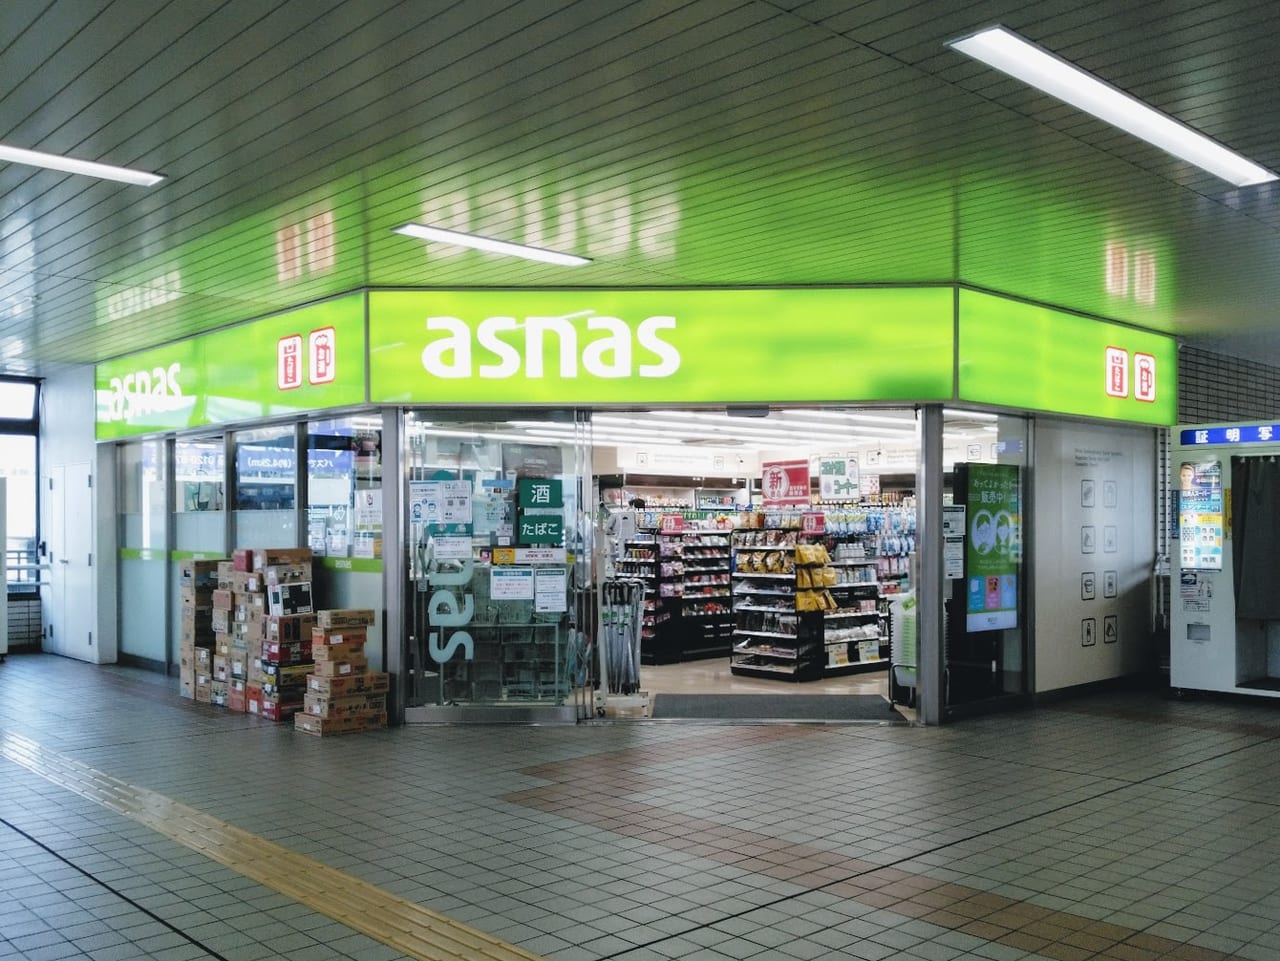 アズナス逆瀬川店は2021年9月15日に営業終了します